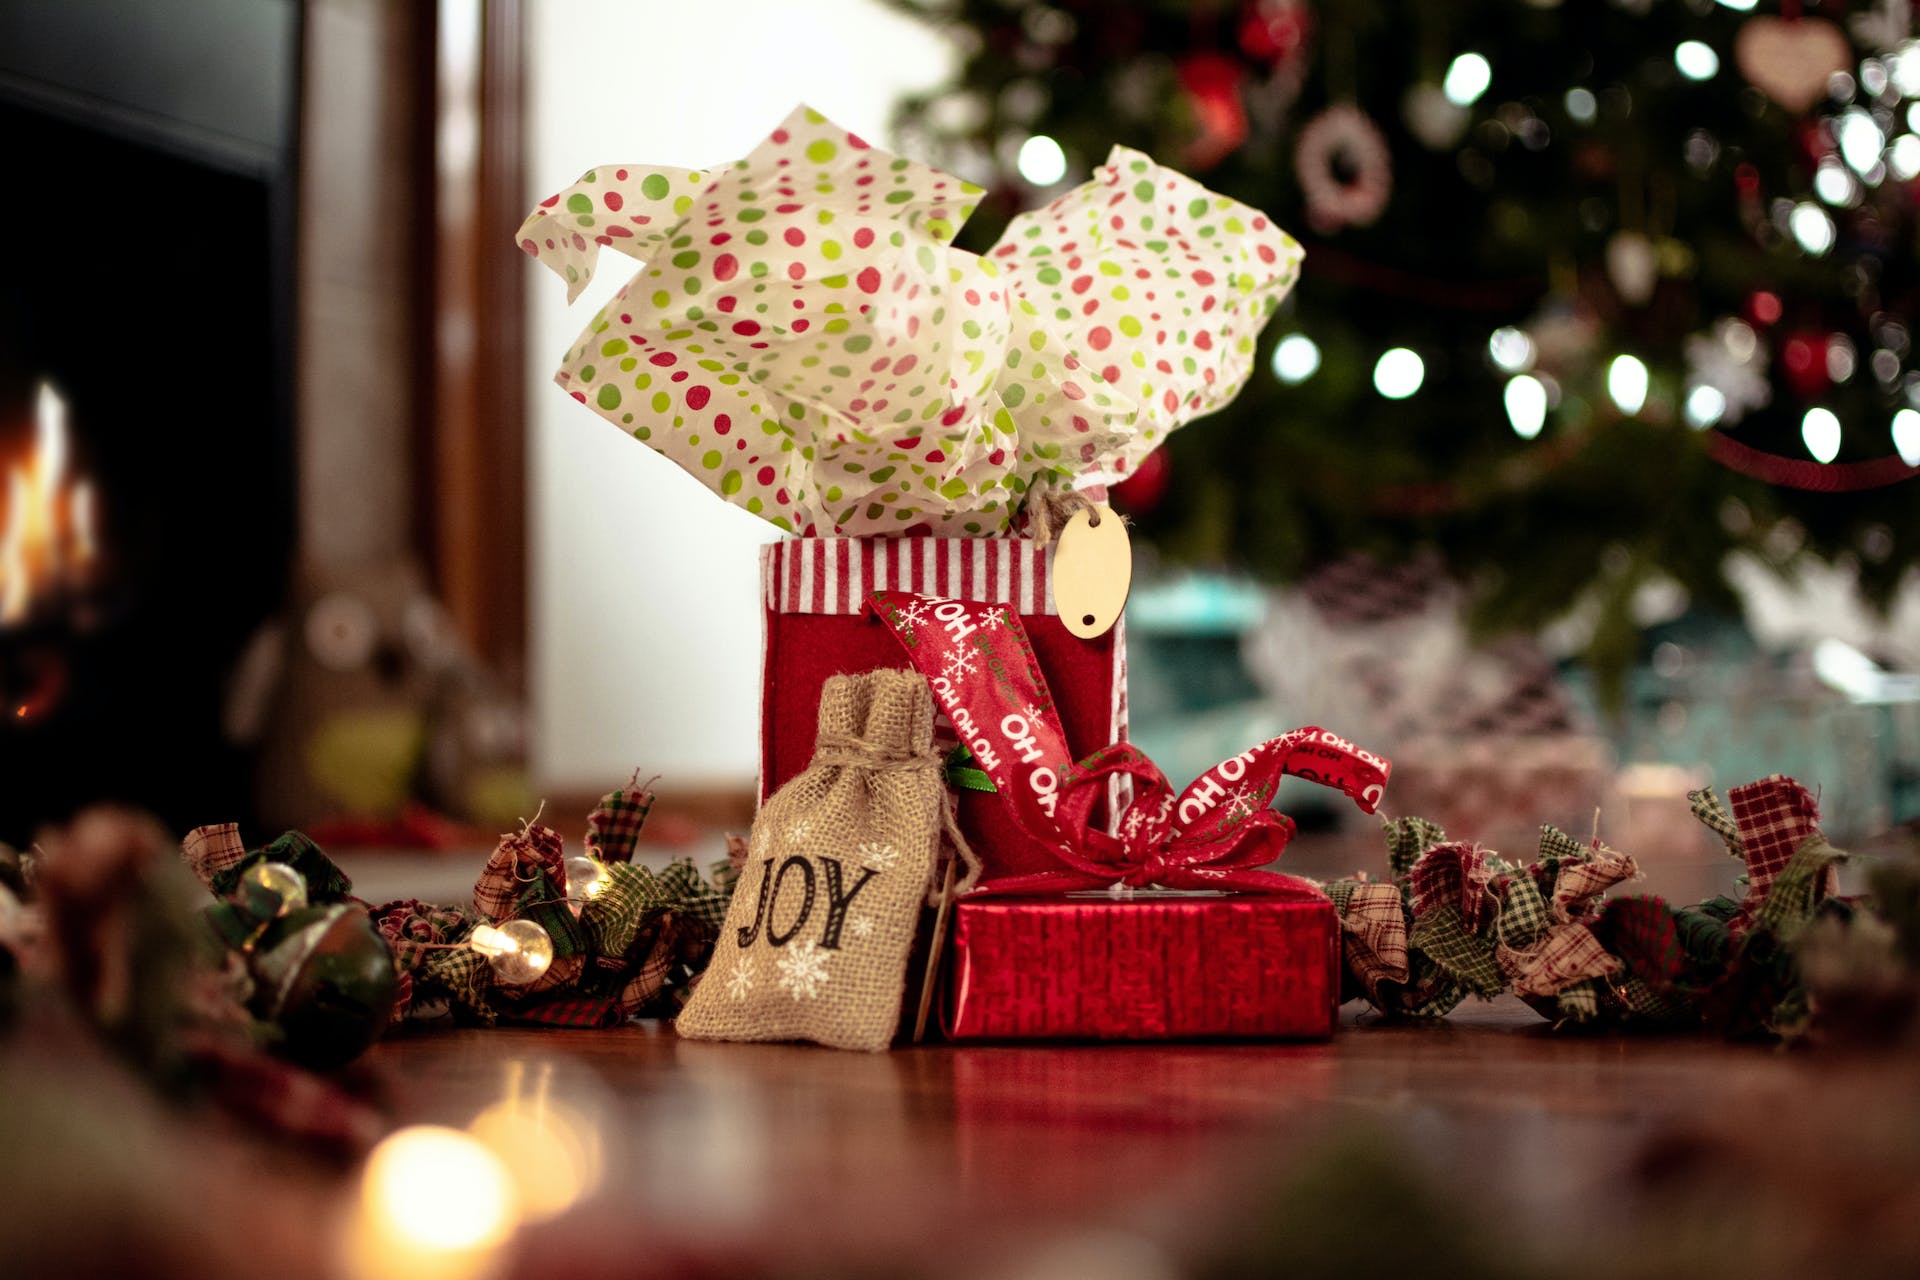 Übereinander gestapelte Weihnachtsgeschenke | Quelle: Pexels